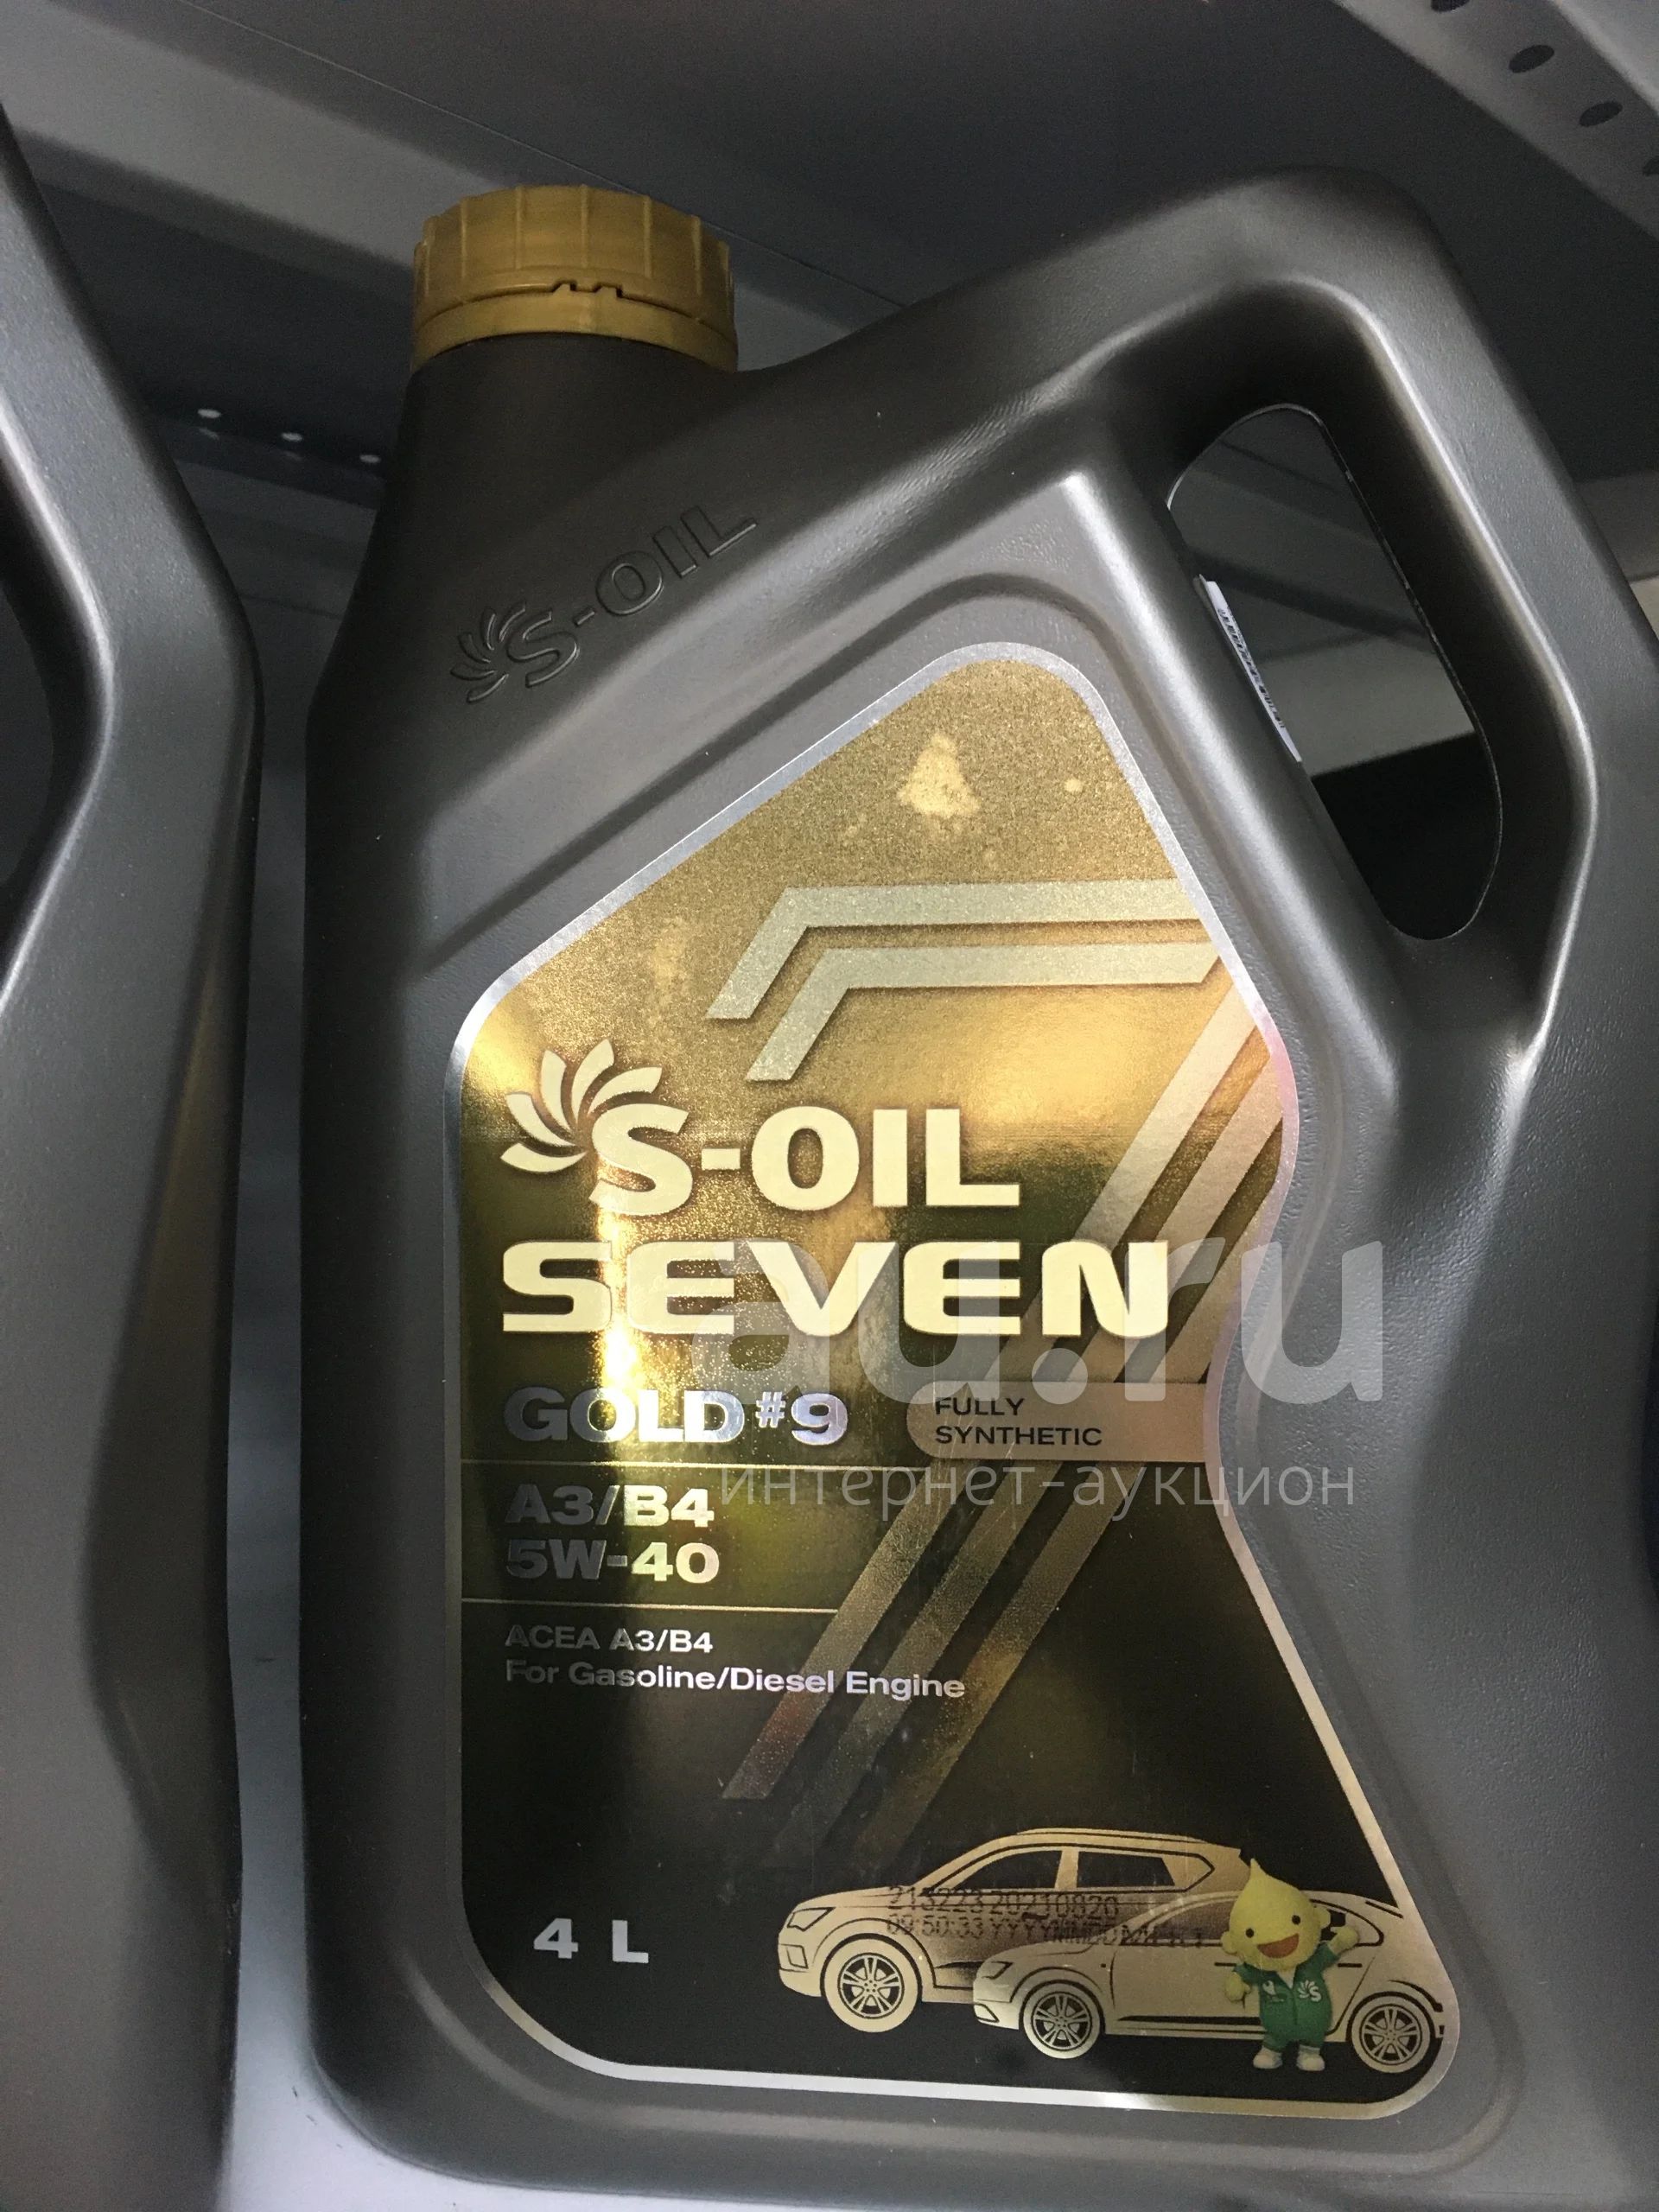 Масло 5w40 502 505. S-Oil Seven Gold #9 5w-30 a5/b5. S-Oil 7 Gold #9 a3/b4 5w40. S-Oil 7 Gold #9 c5 0w20. S-Oil Seven gold9 a3/b4 SN 10w40 синтетика (20л.).